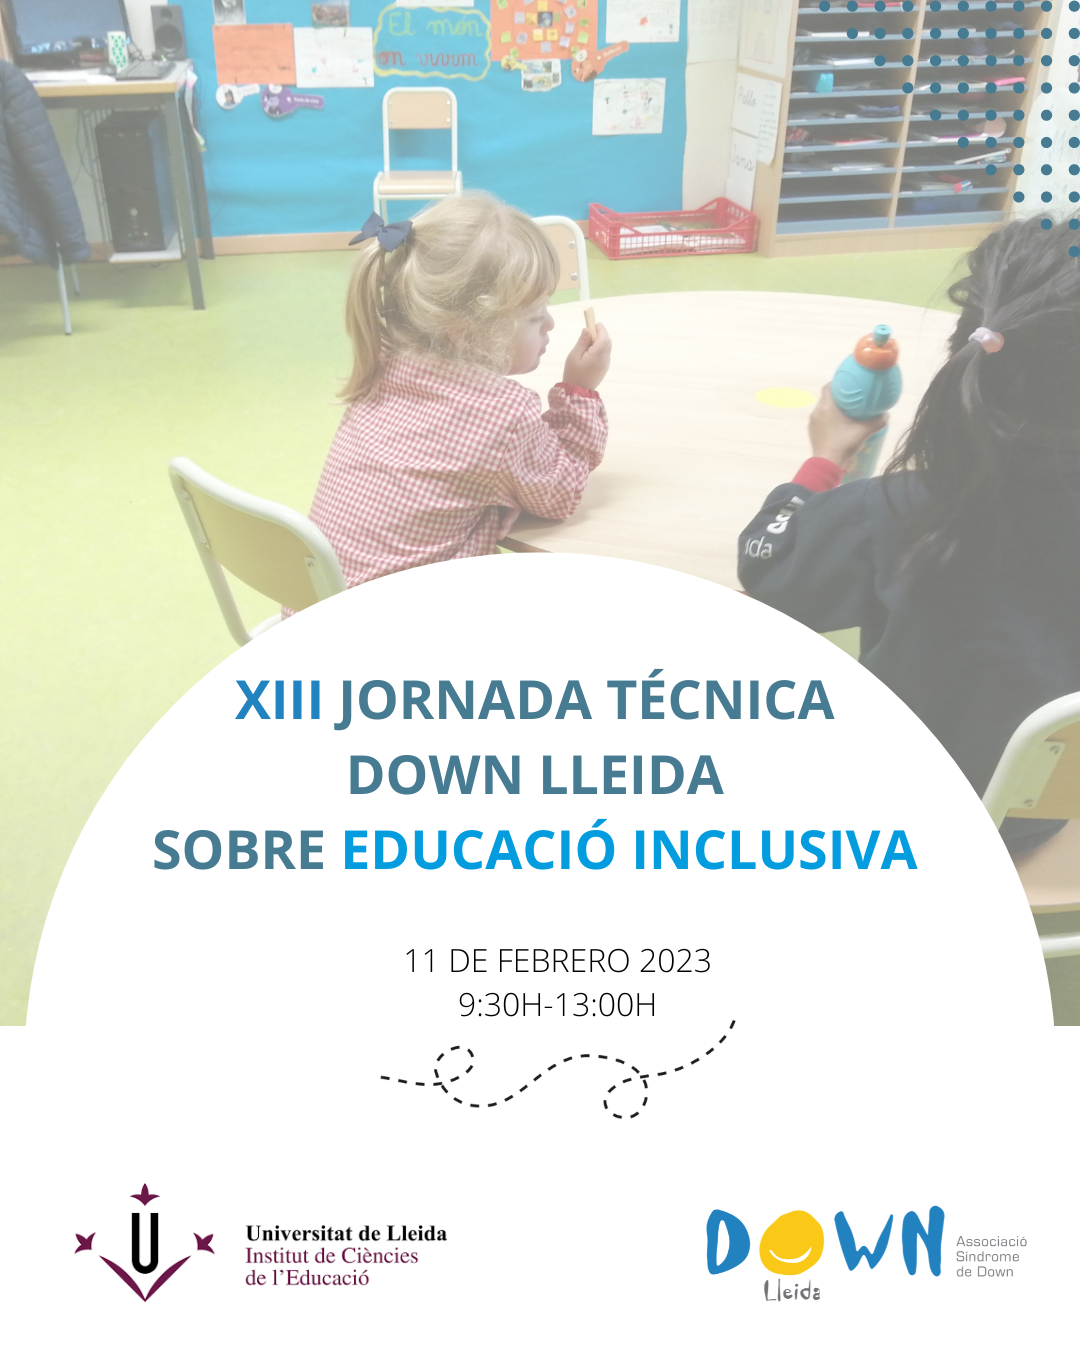 XIII Jornada Tècnica DOWN LLEIDA sobre educació inclusiva